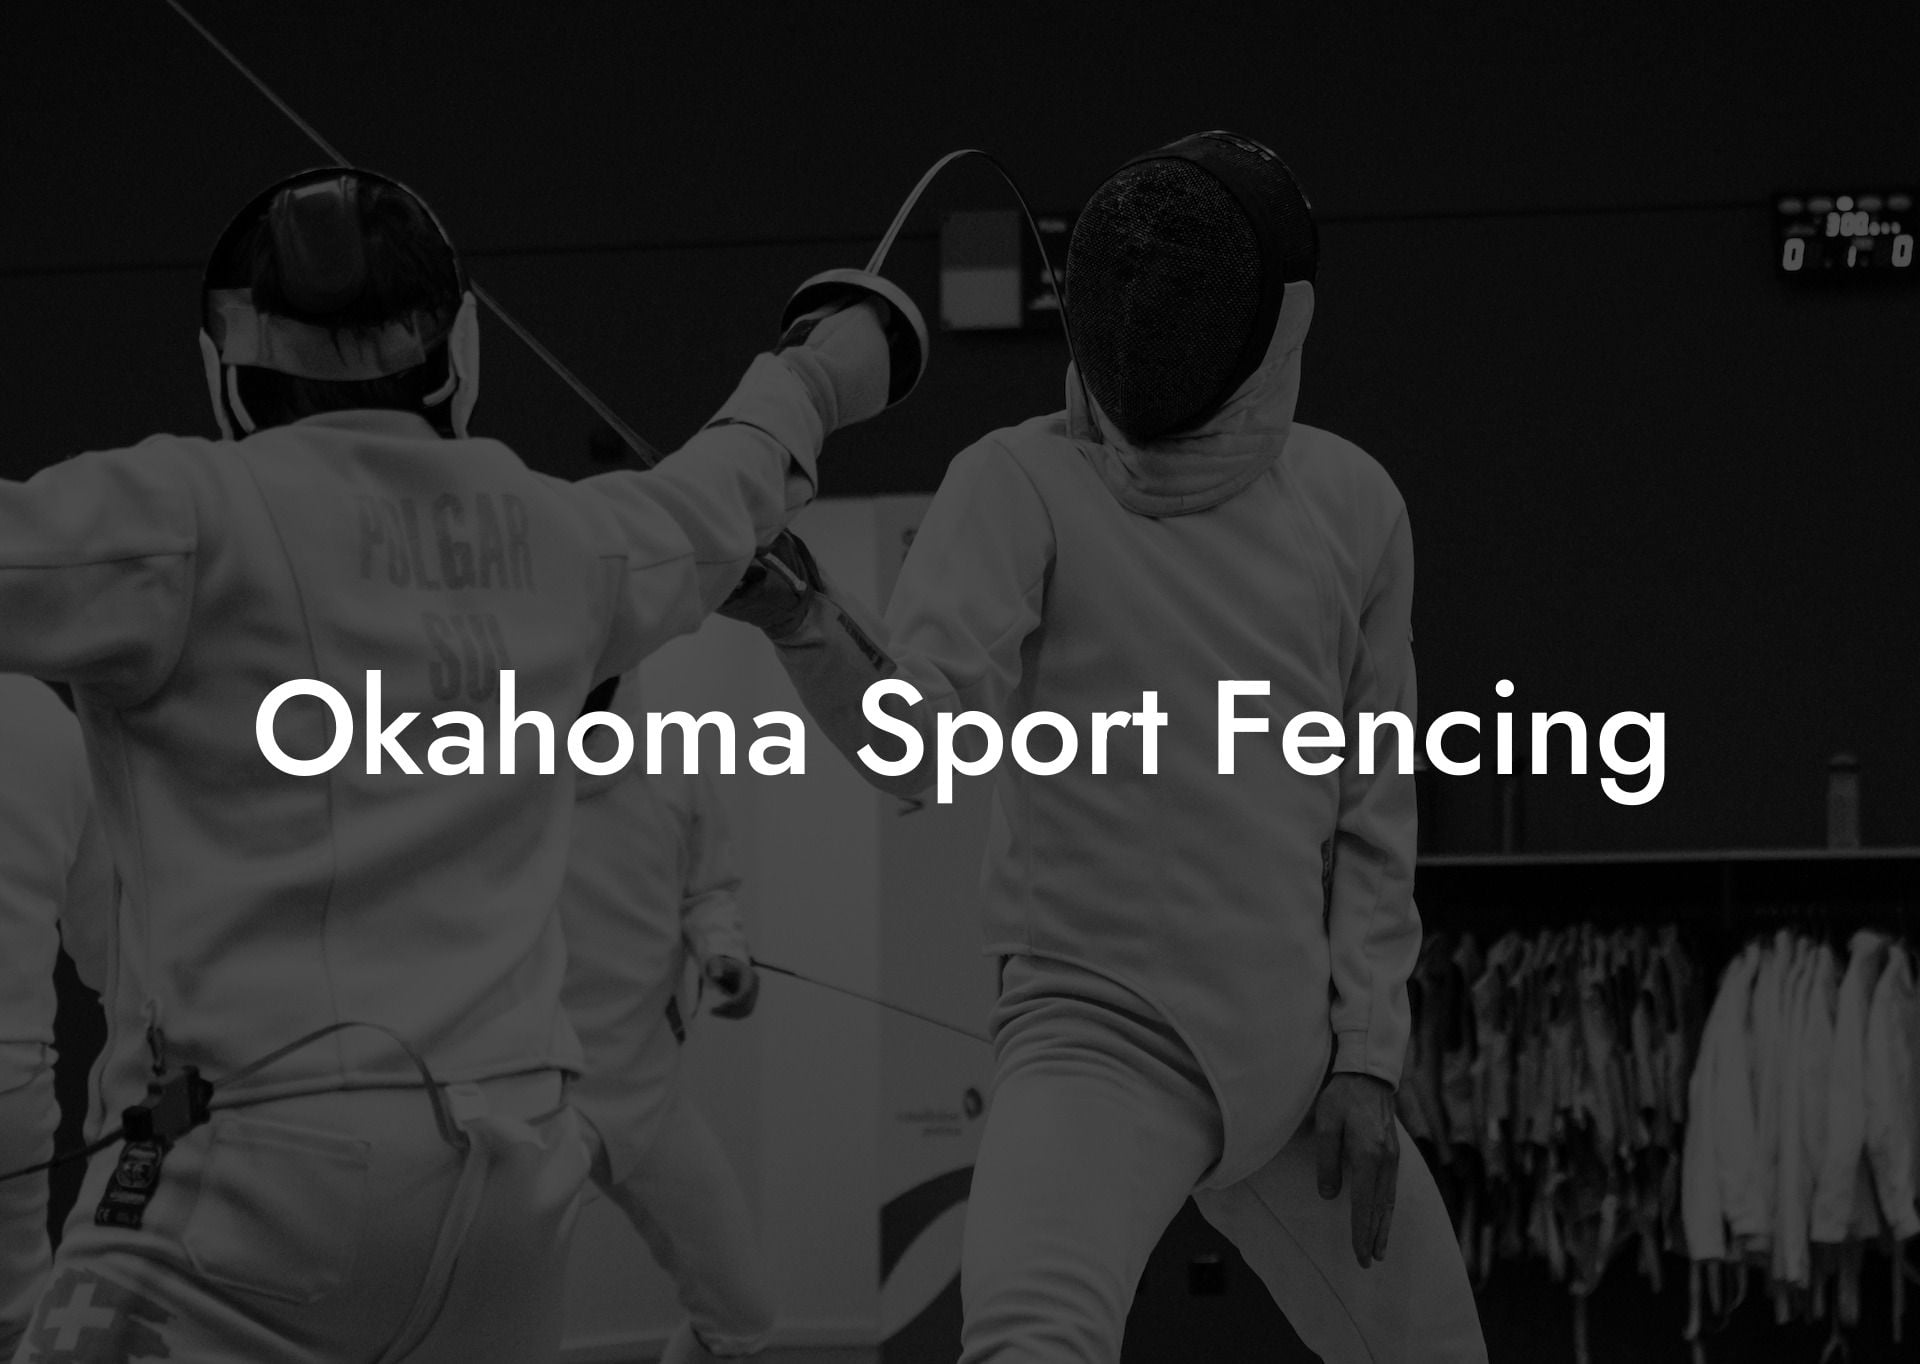 Okahoma Sport Fencing